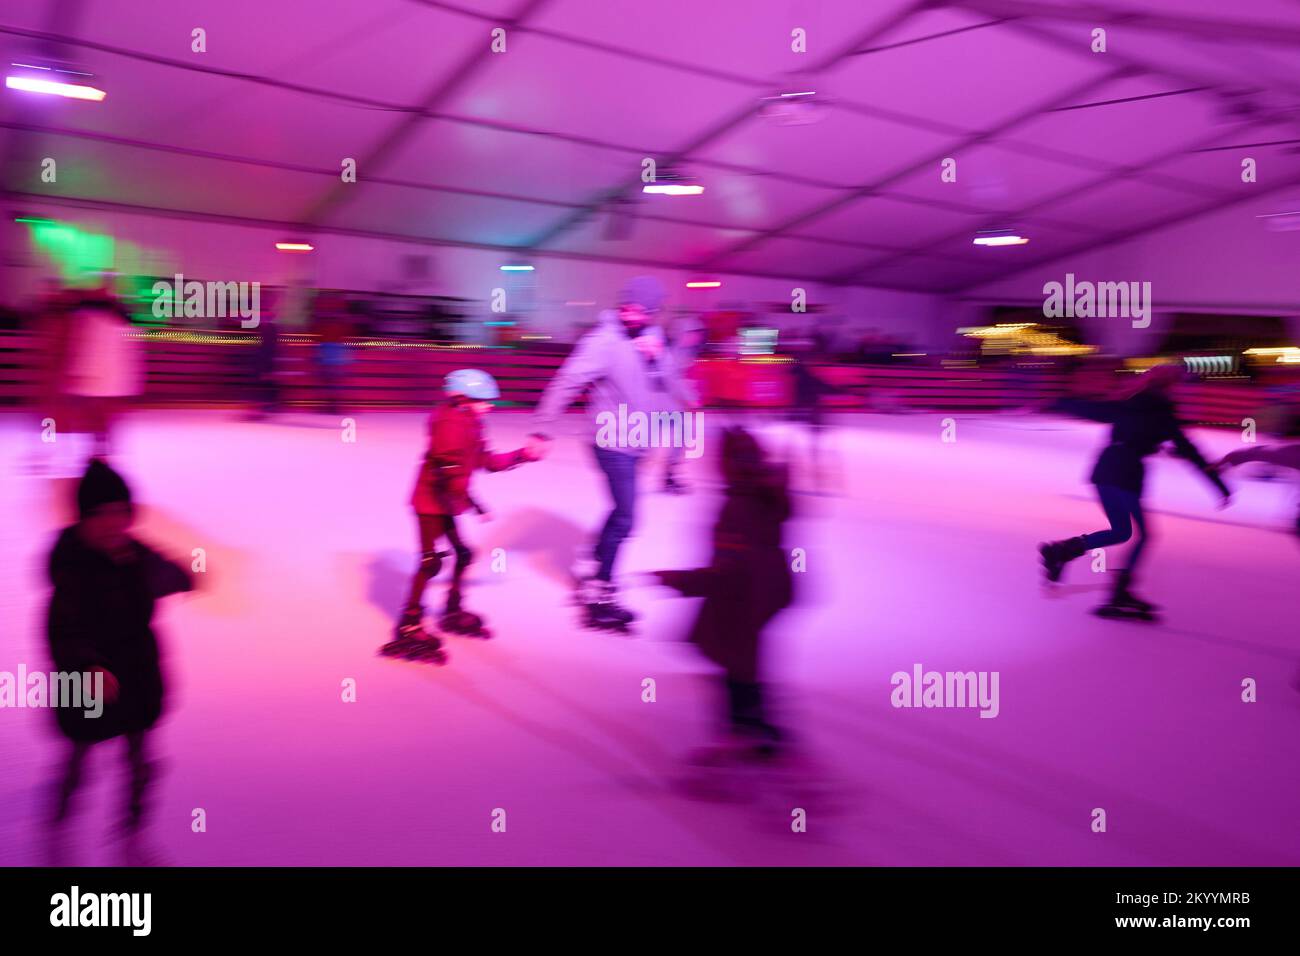 Pista de patinaje sobre ruedas fotografías e imágenes de alta resolución -  Página 7 - Alamy